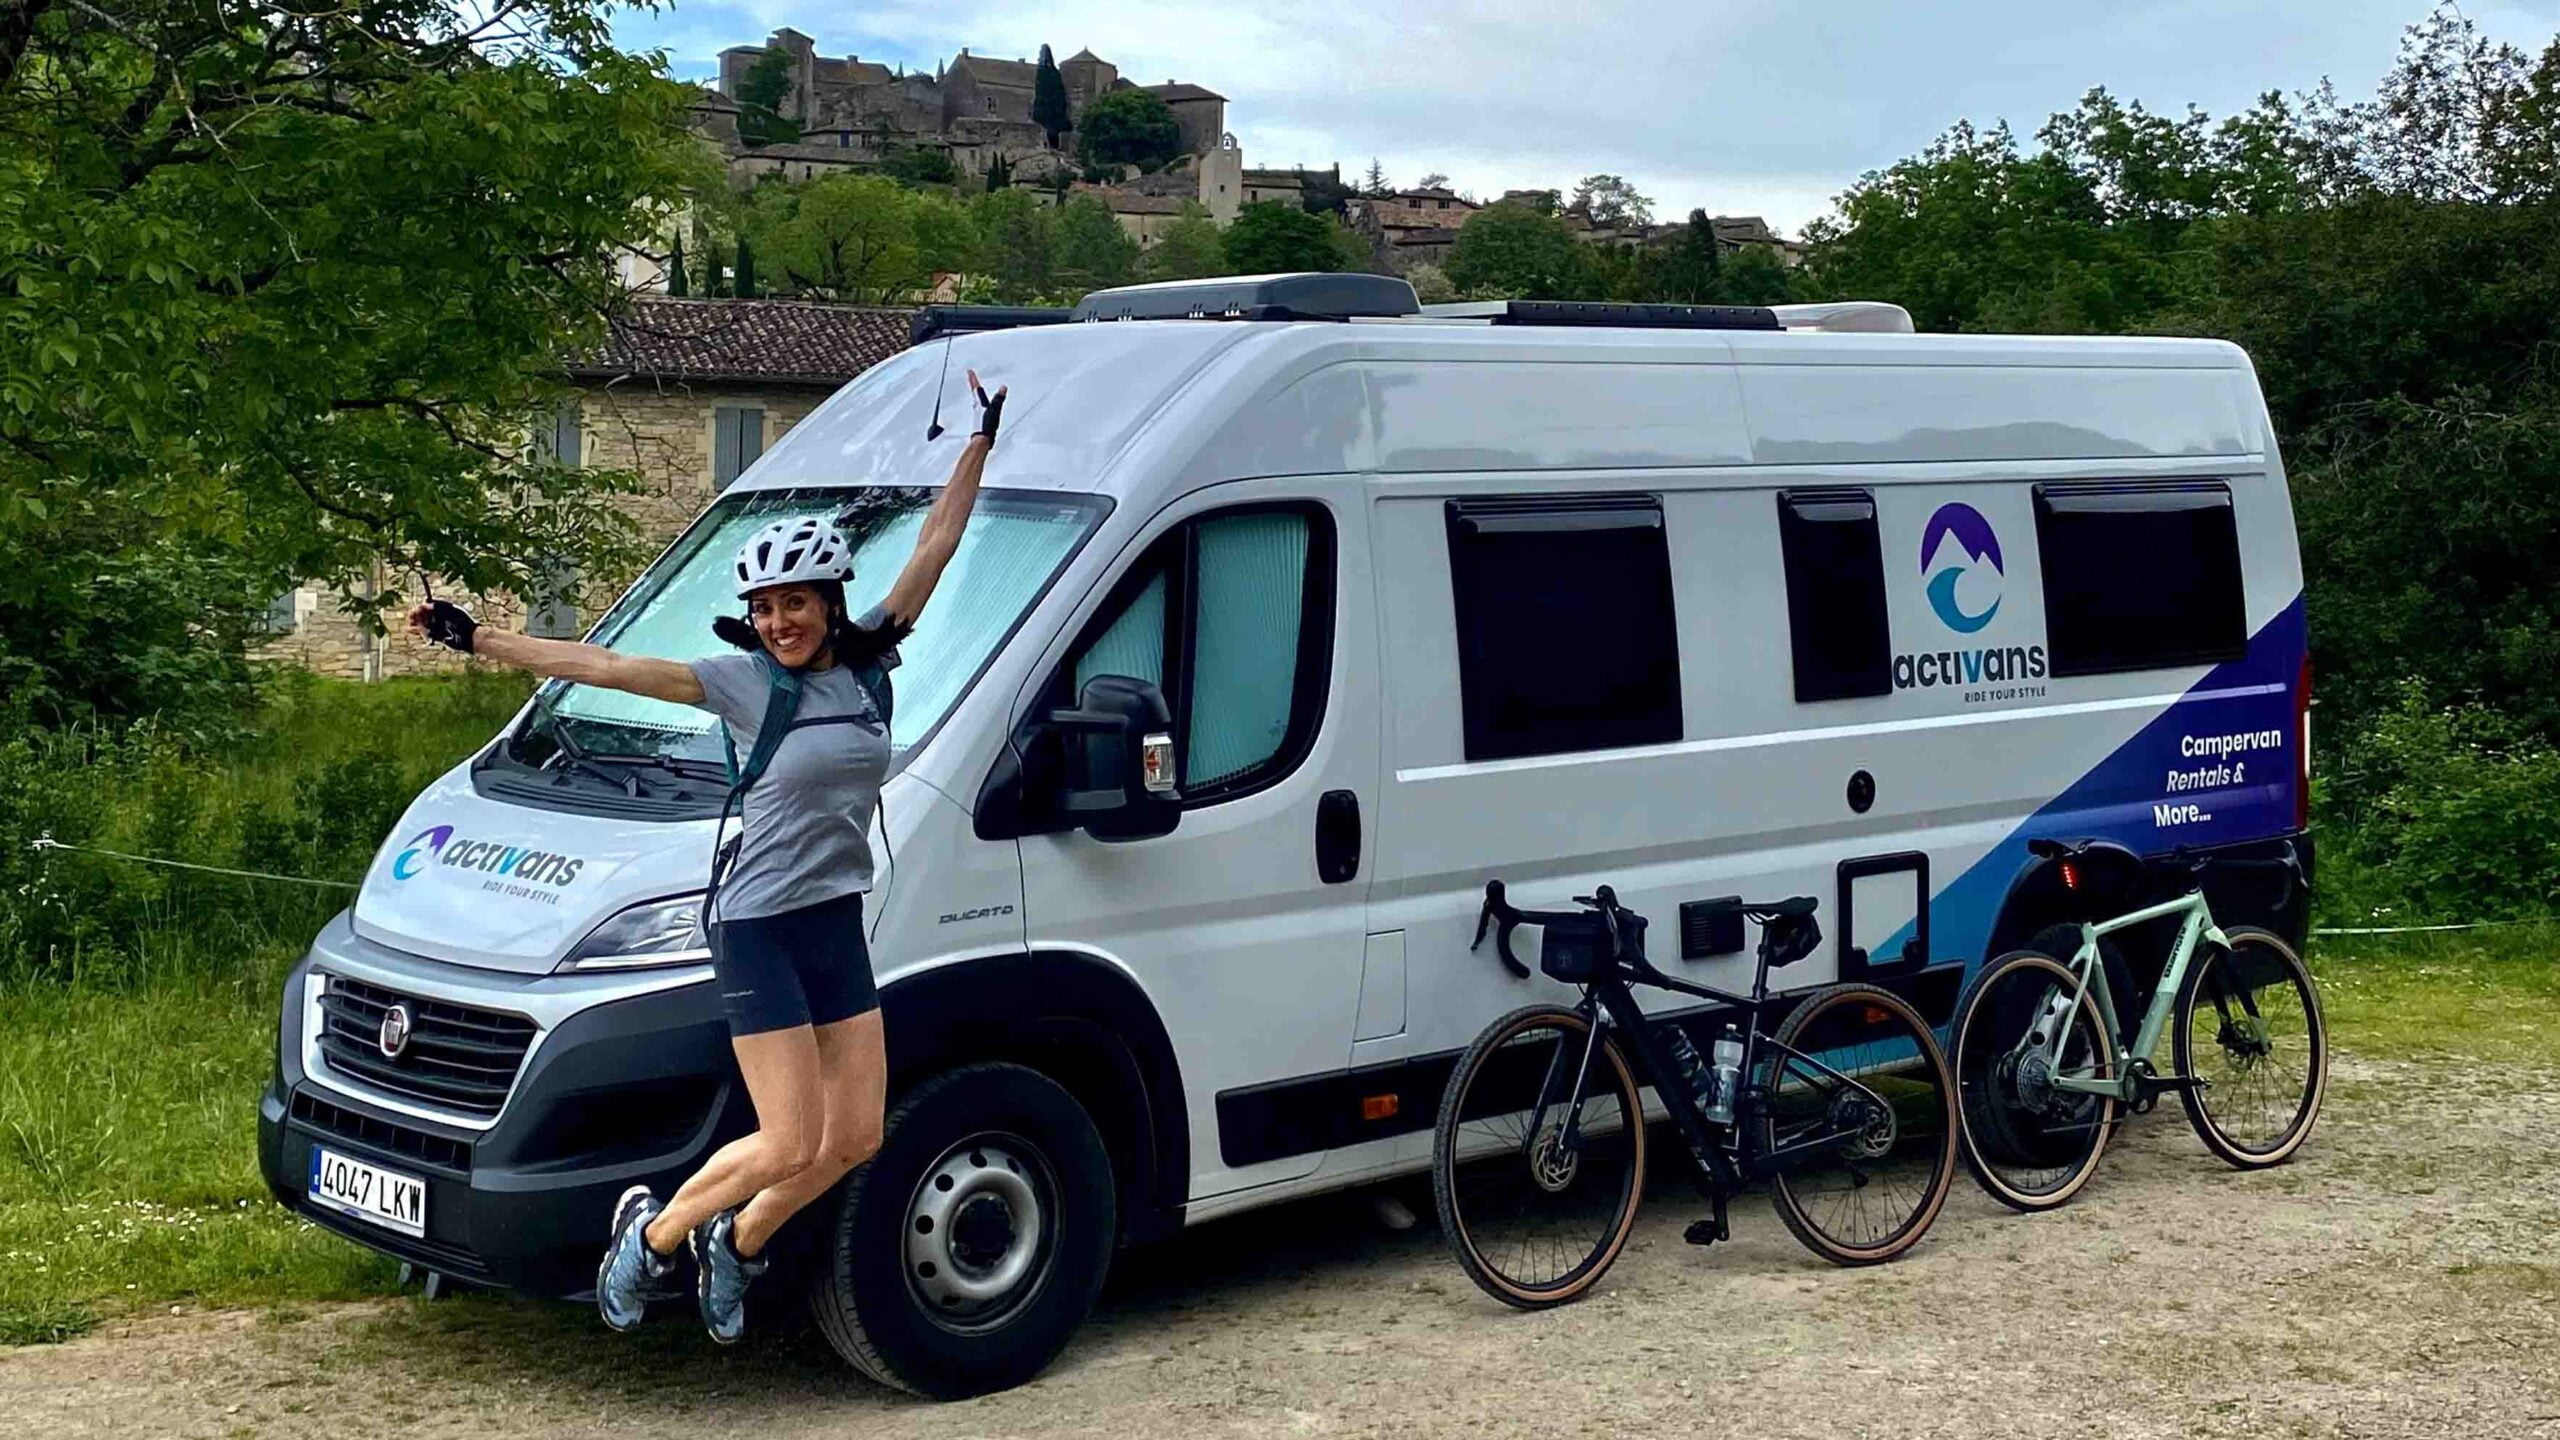 Cyclist with Activan camper van, Girona Costa Brava region